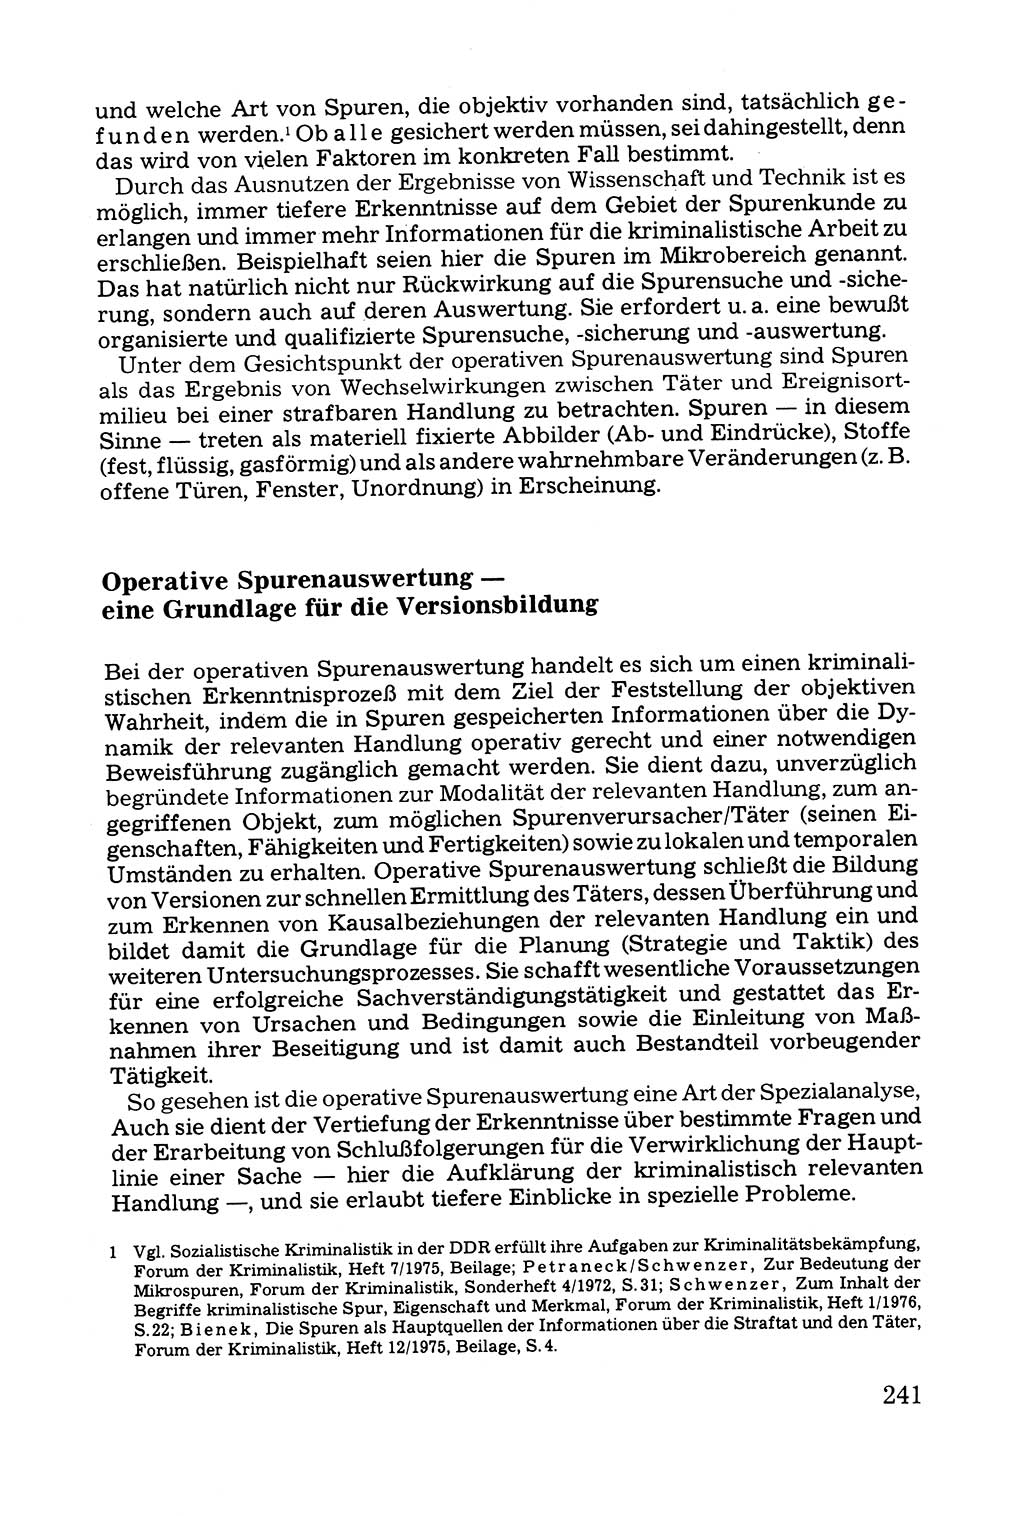 Grundfragen der Beweisführung im Ermittlungsverfahren [Deutsche Demokratische Republik (DDR)] 1980, Seite 241 (Bws.-Fhrg. EV DDR 1980, S. 241)